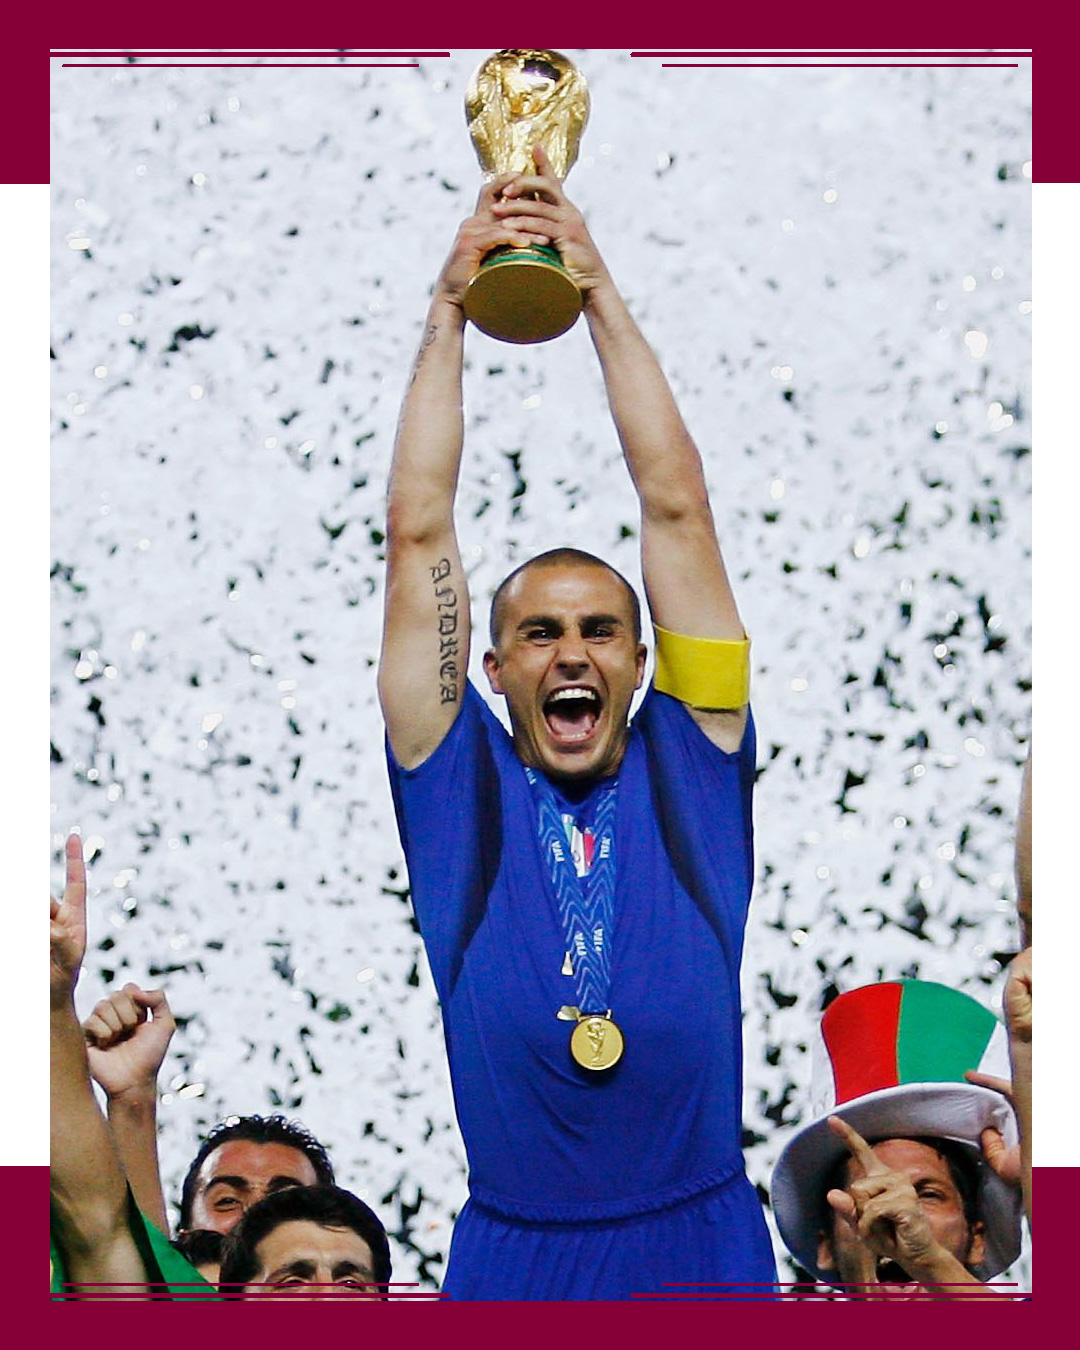 Italia, Champion in 2006